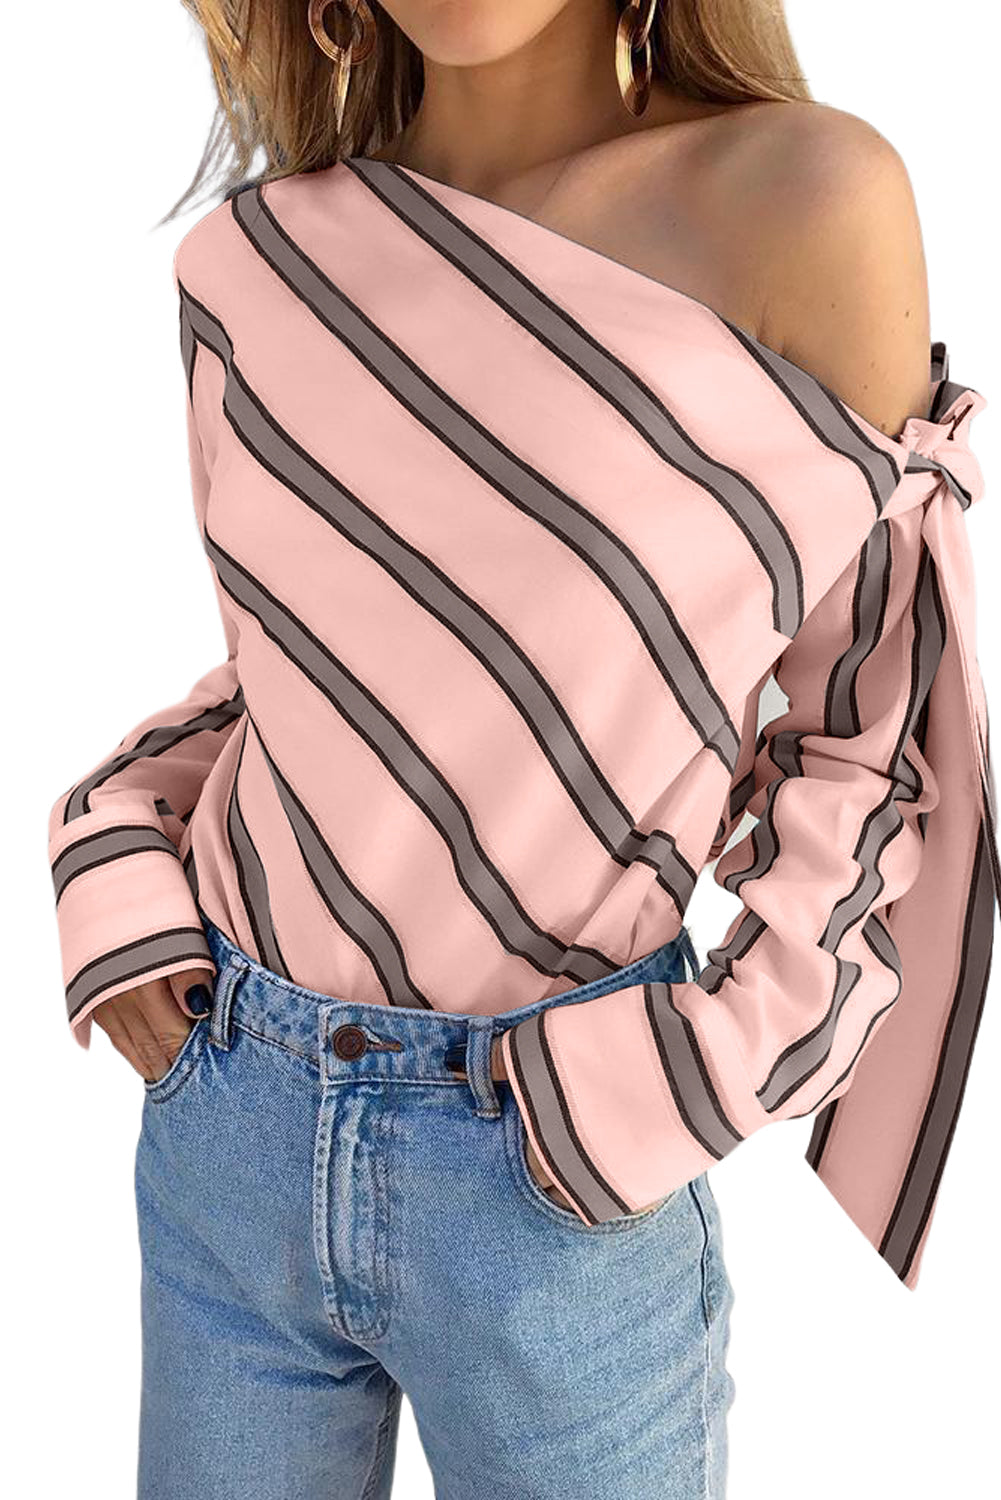 Rožnata črtasta asimetrična bluza z zavezanimi rameni